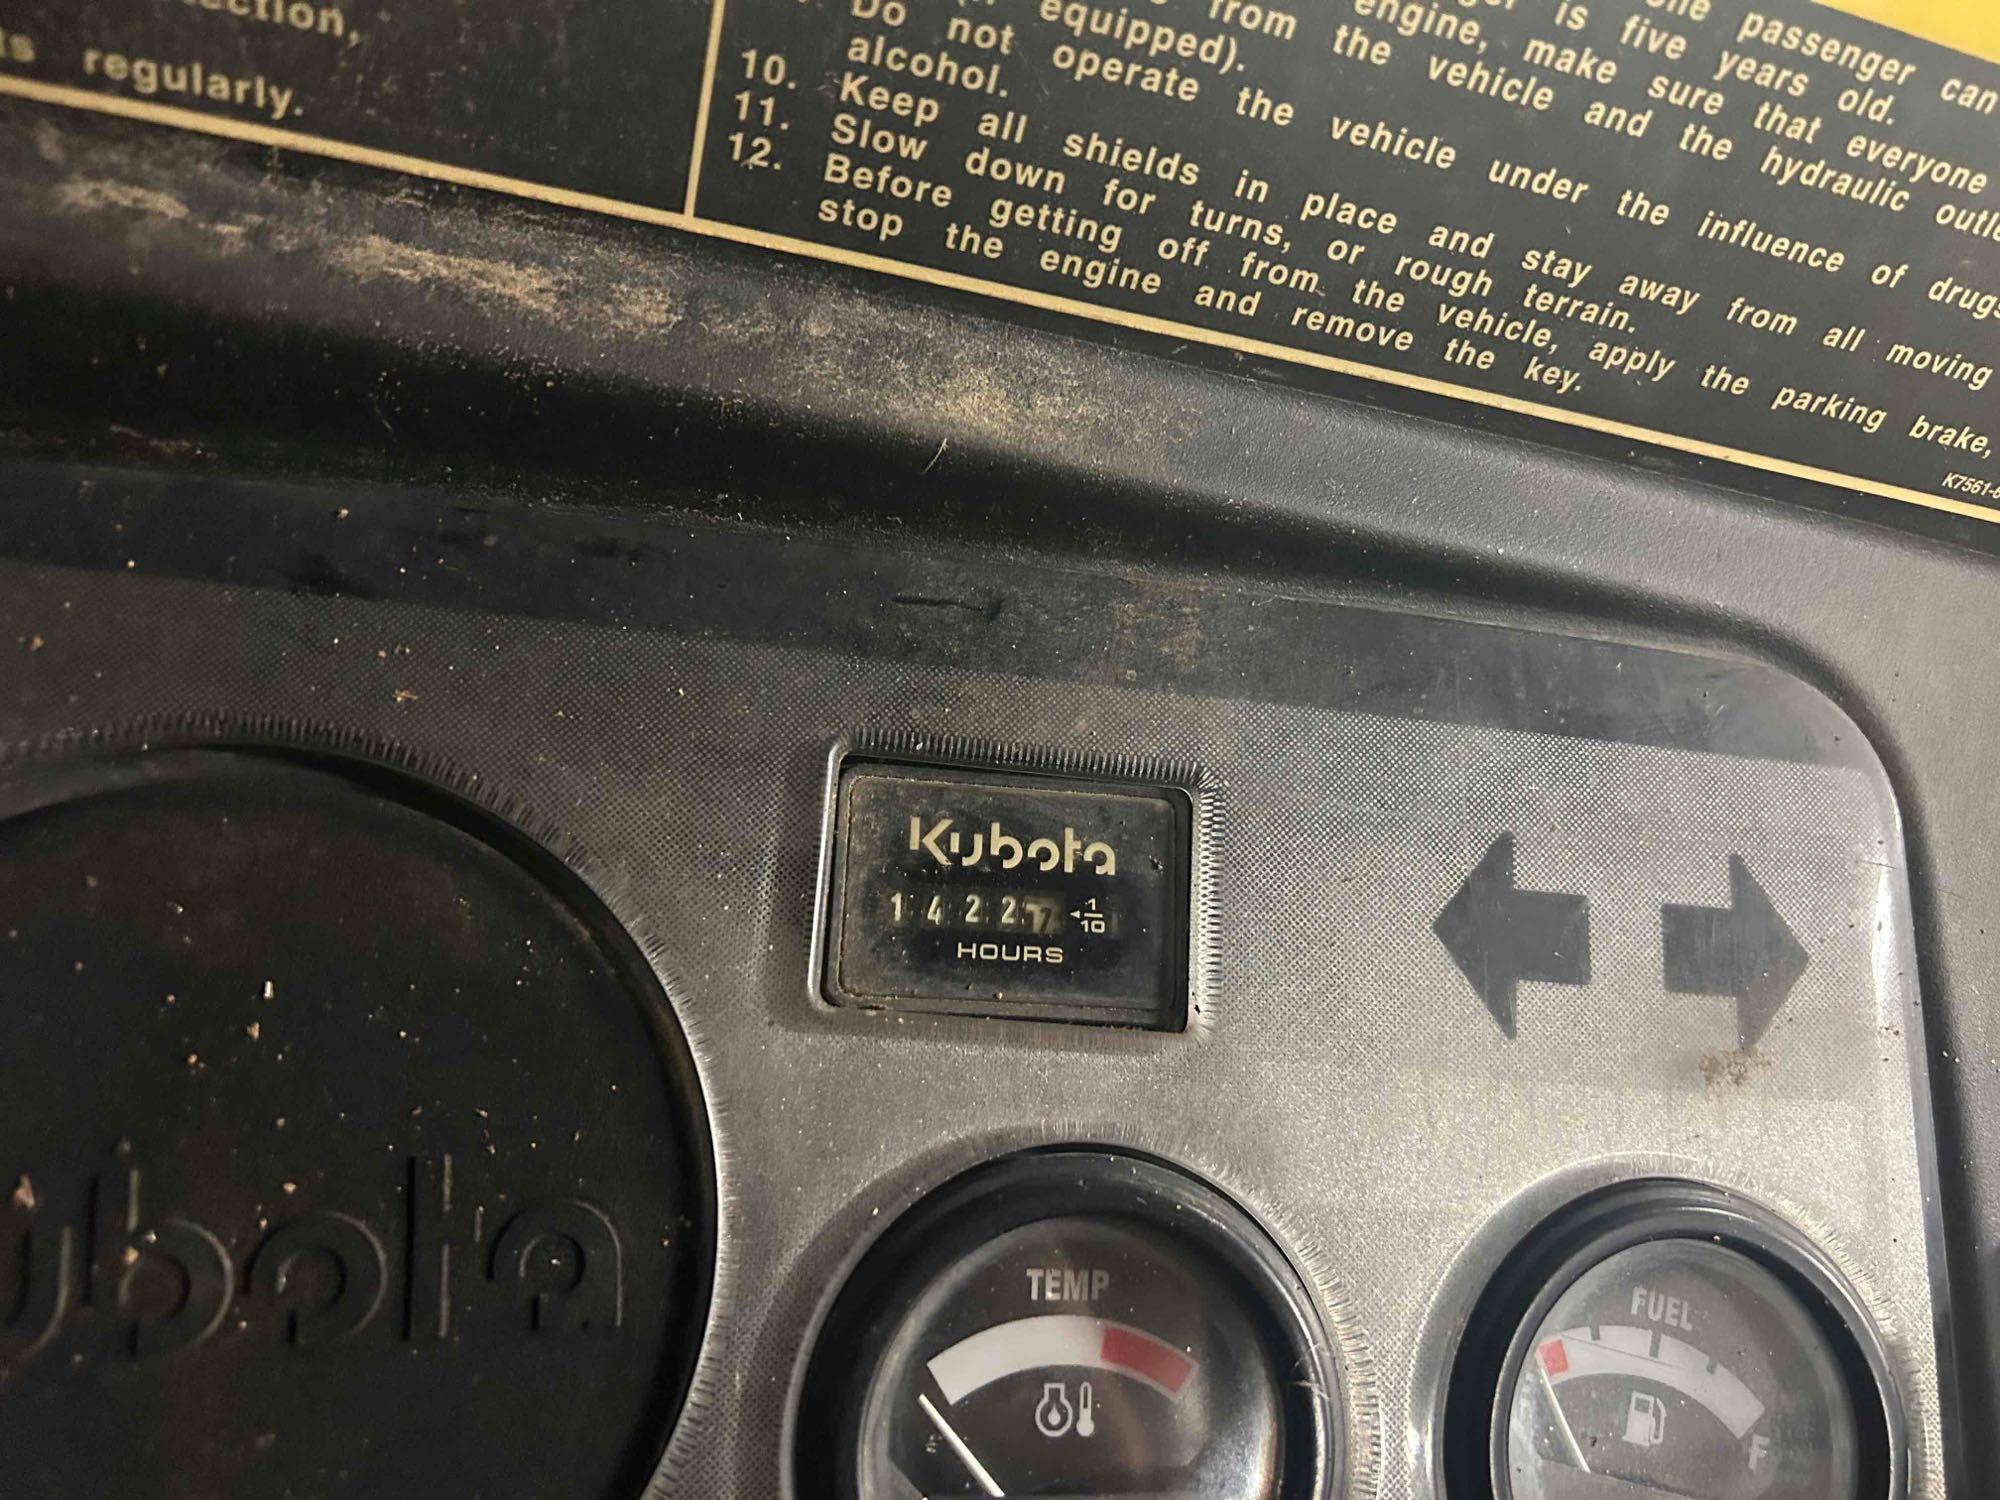 Kubota RTV900 4x4 Diesel